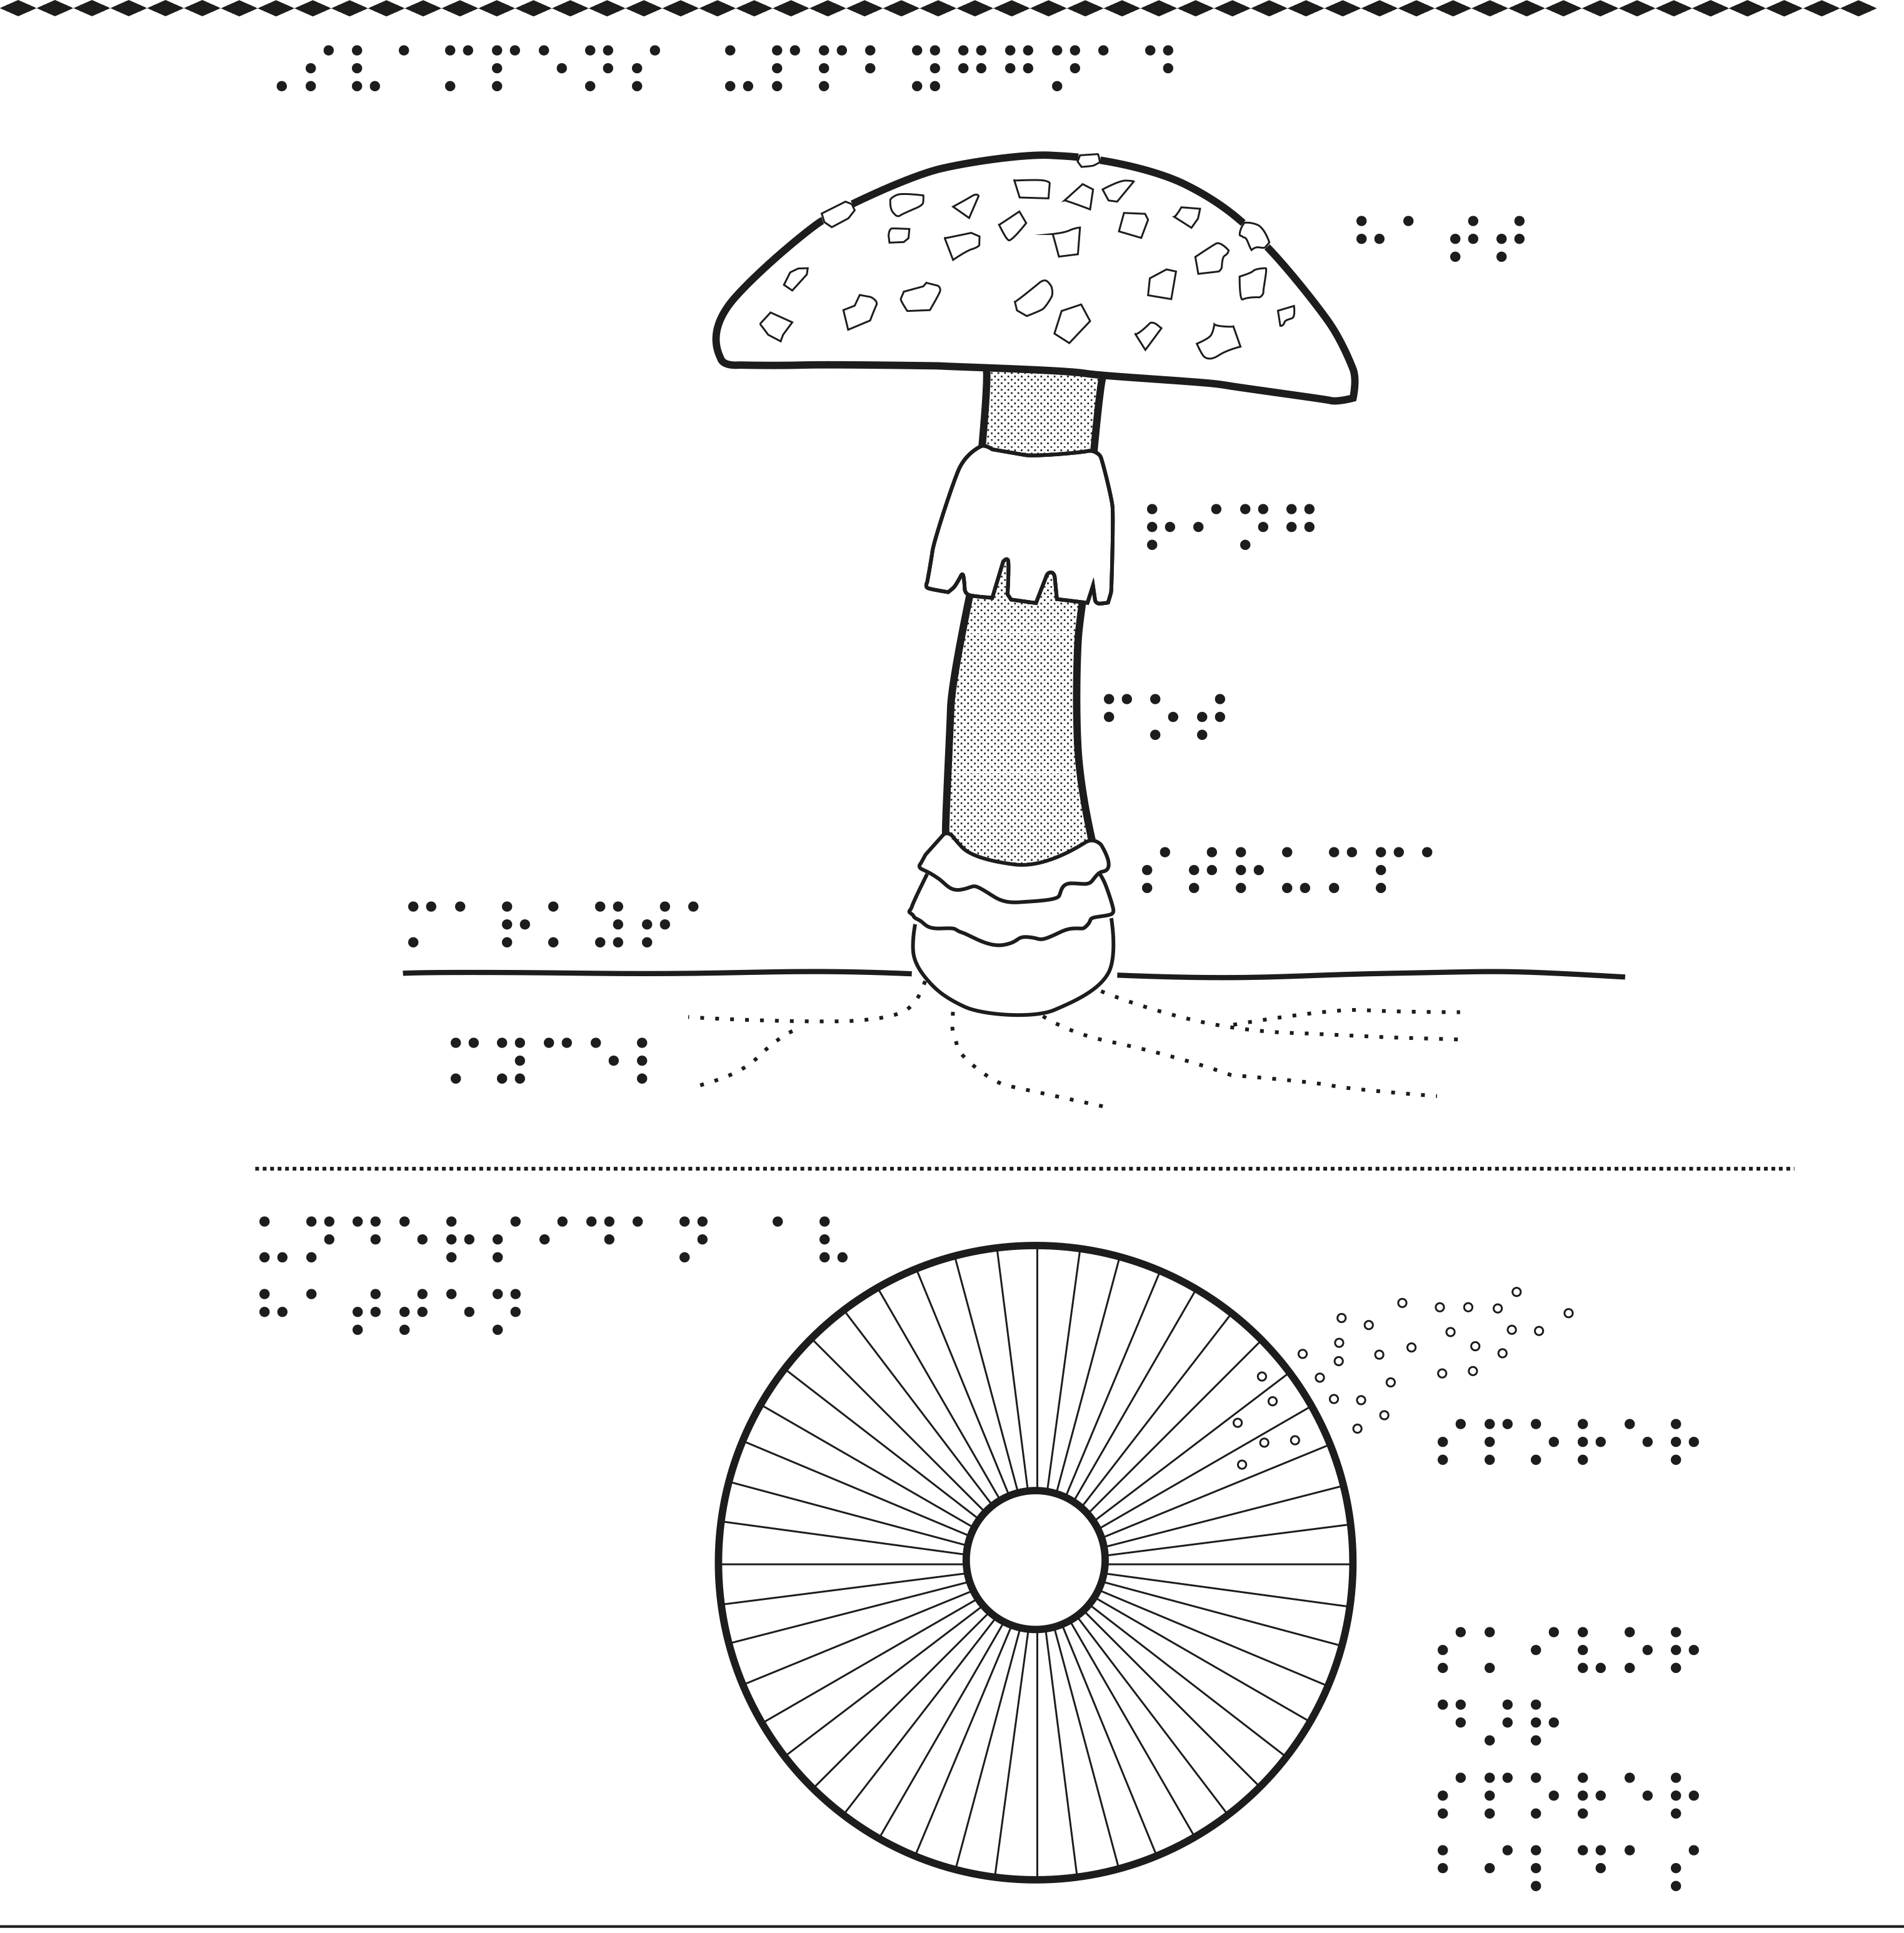 En bild om svampens uppbyggnad.